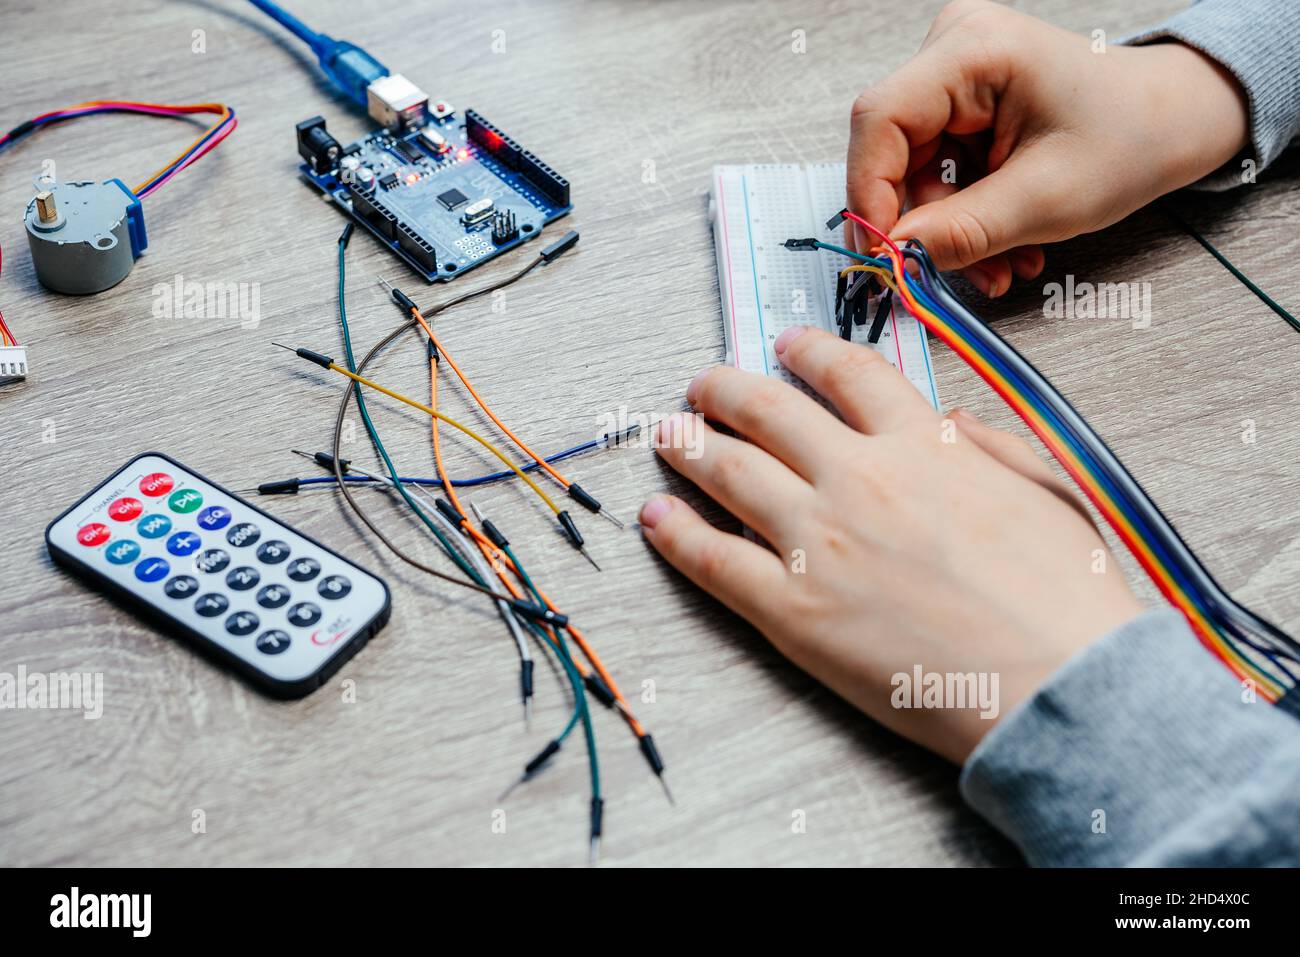 Ein Kind, das Kabel an Sensorchips ansteckt, während es arduino Codierung und Robotik lernt Stockfoto